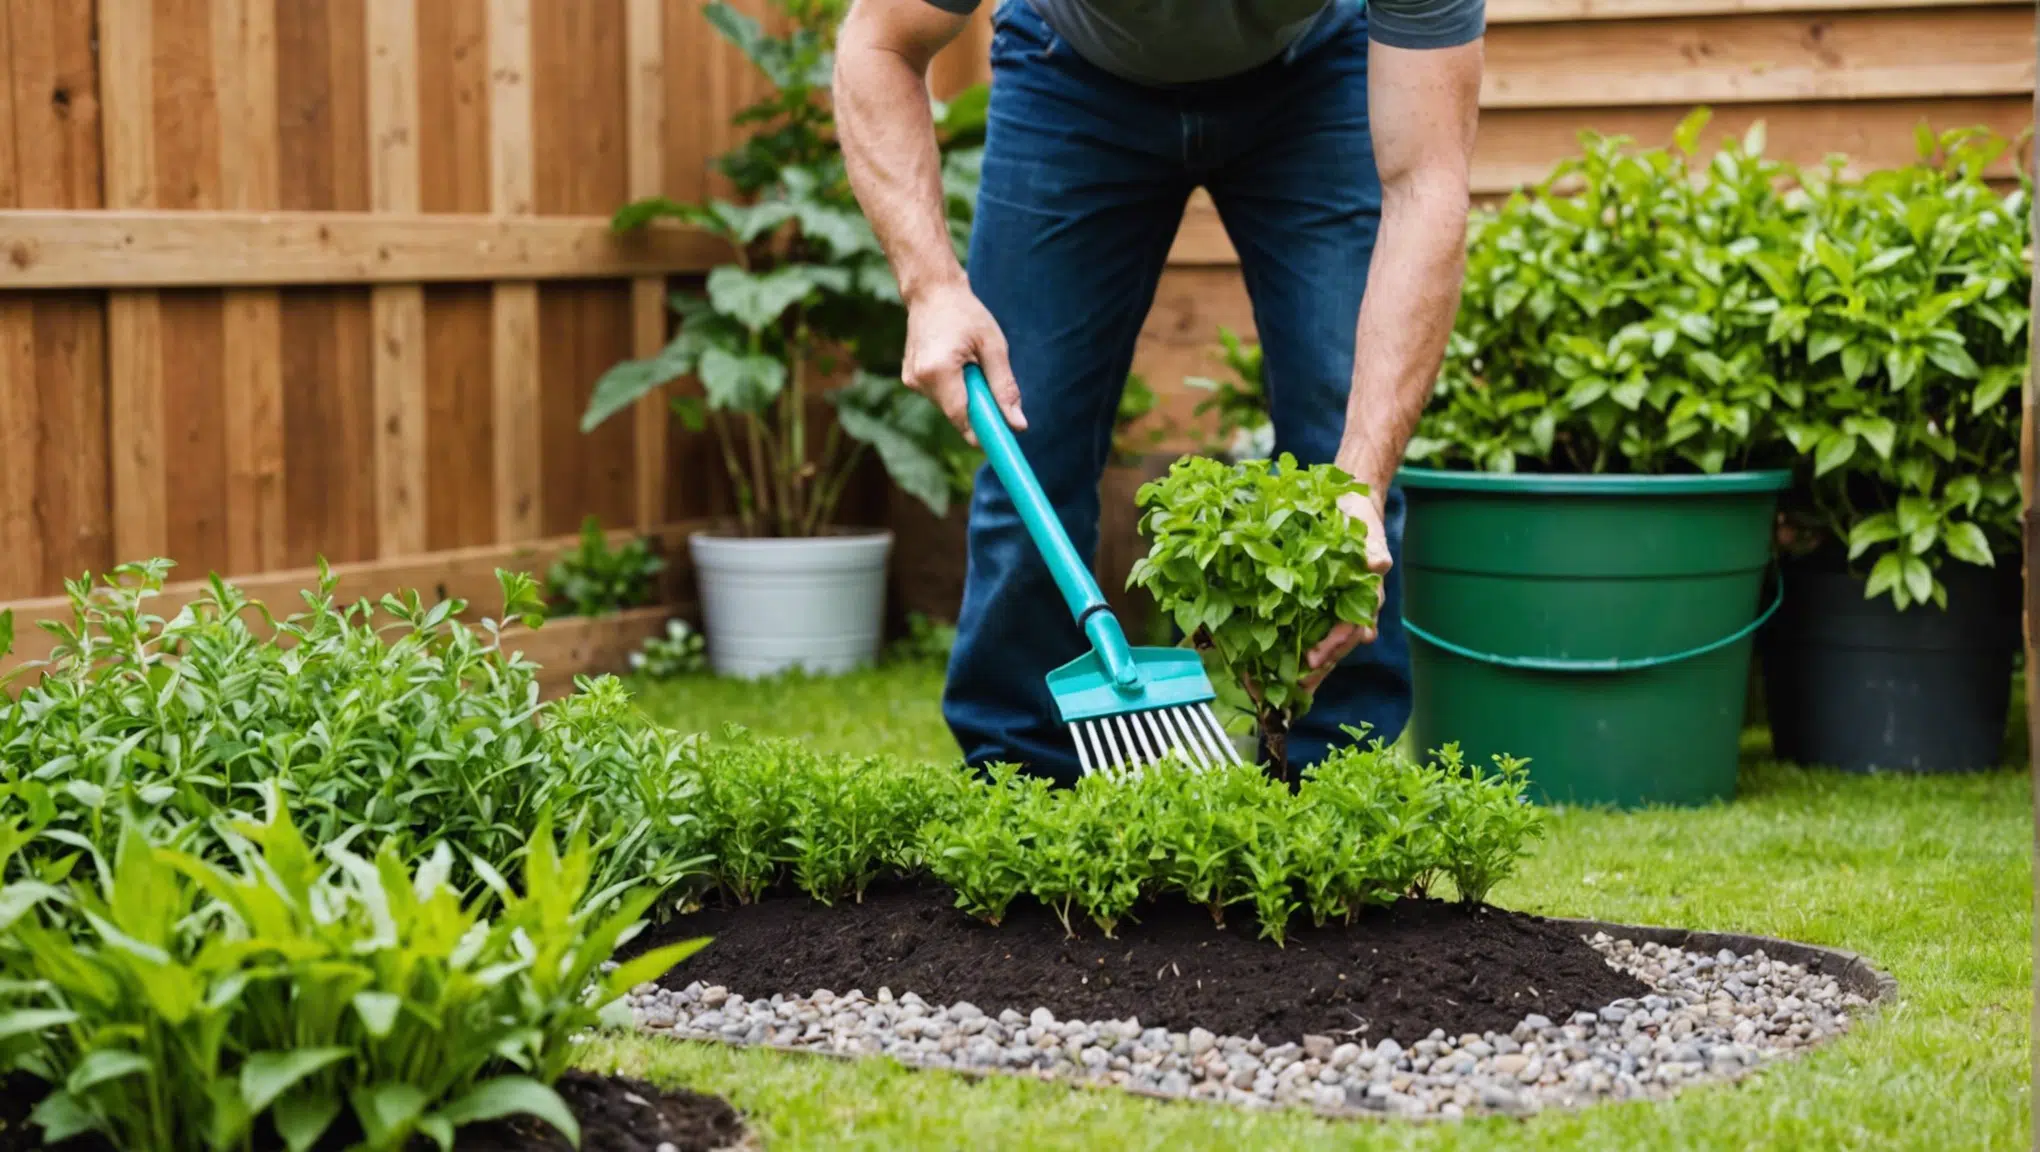 découvrez des astuces de jardinage simples et efficaces qui vous surprendront ! vous ne croirez pas à quel point il est facile de réussir son jardin.